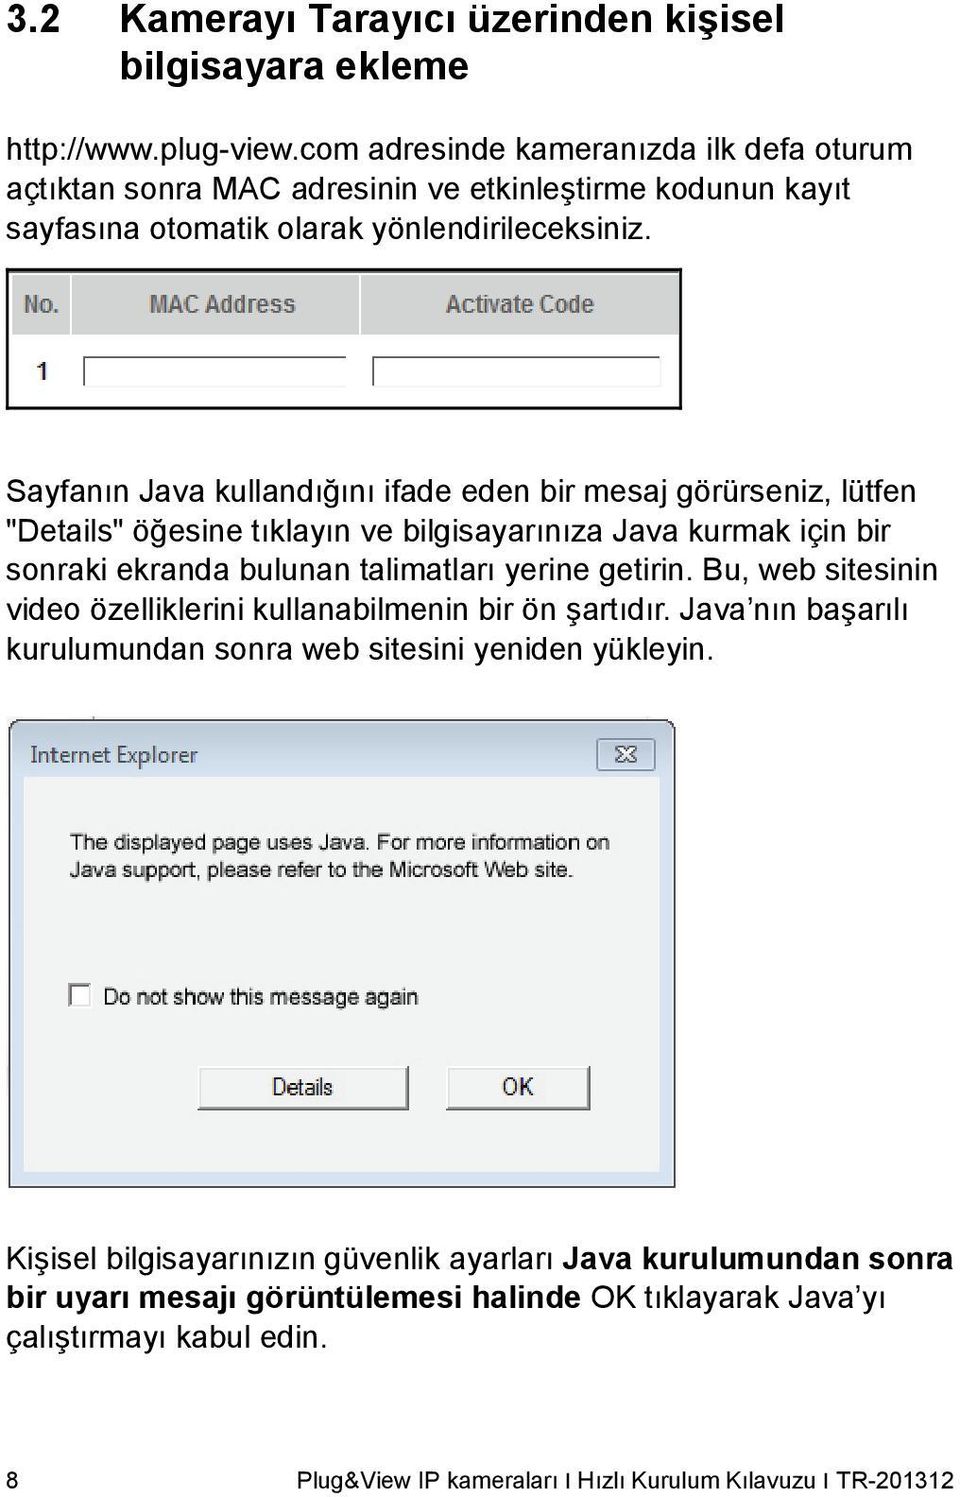 Sayfanın Java kullandığını ifade eden bir mesaj görürseniz, lütfen "Details" öğesine tıklayın ve bilgisayarınıza Java kurmak için bir sonraki ekranda bulunan talimatları yerine getirin.